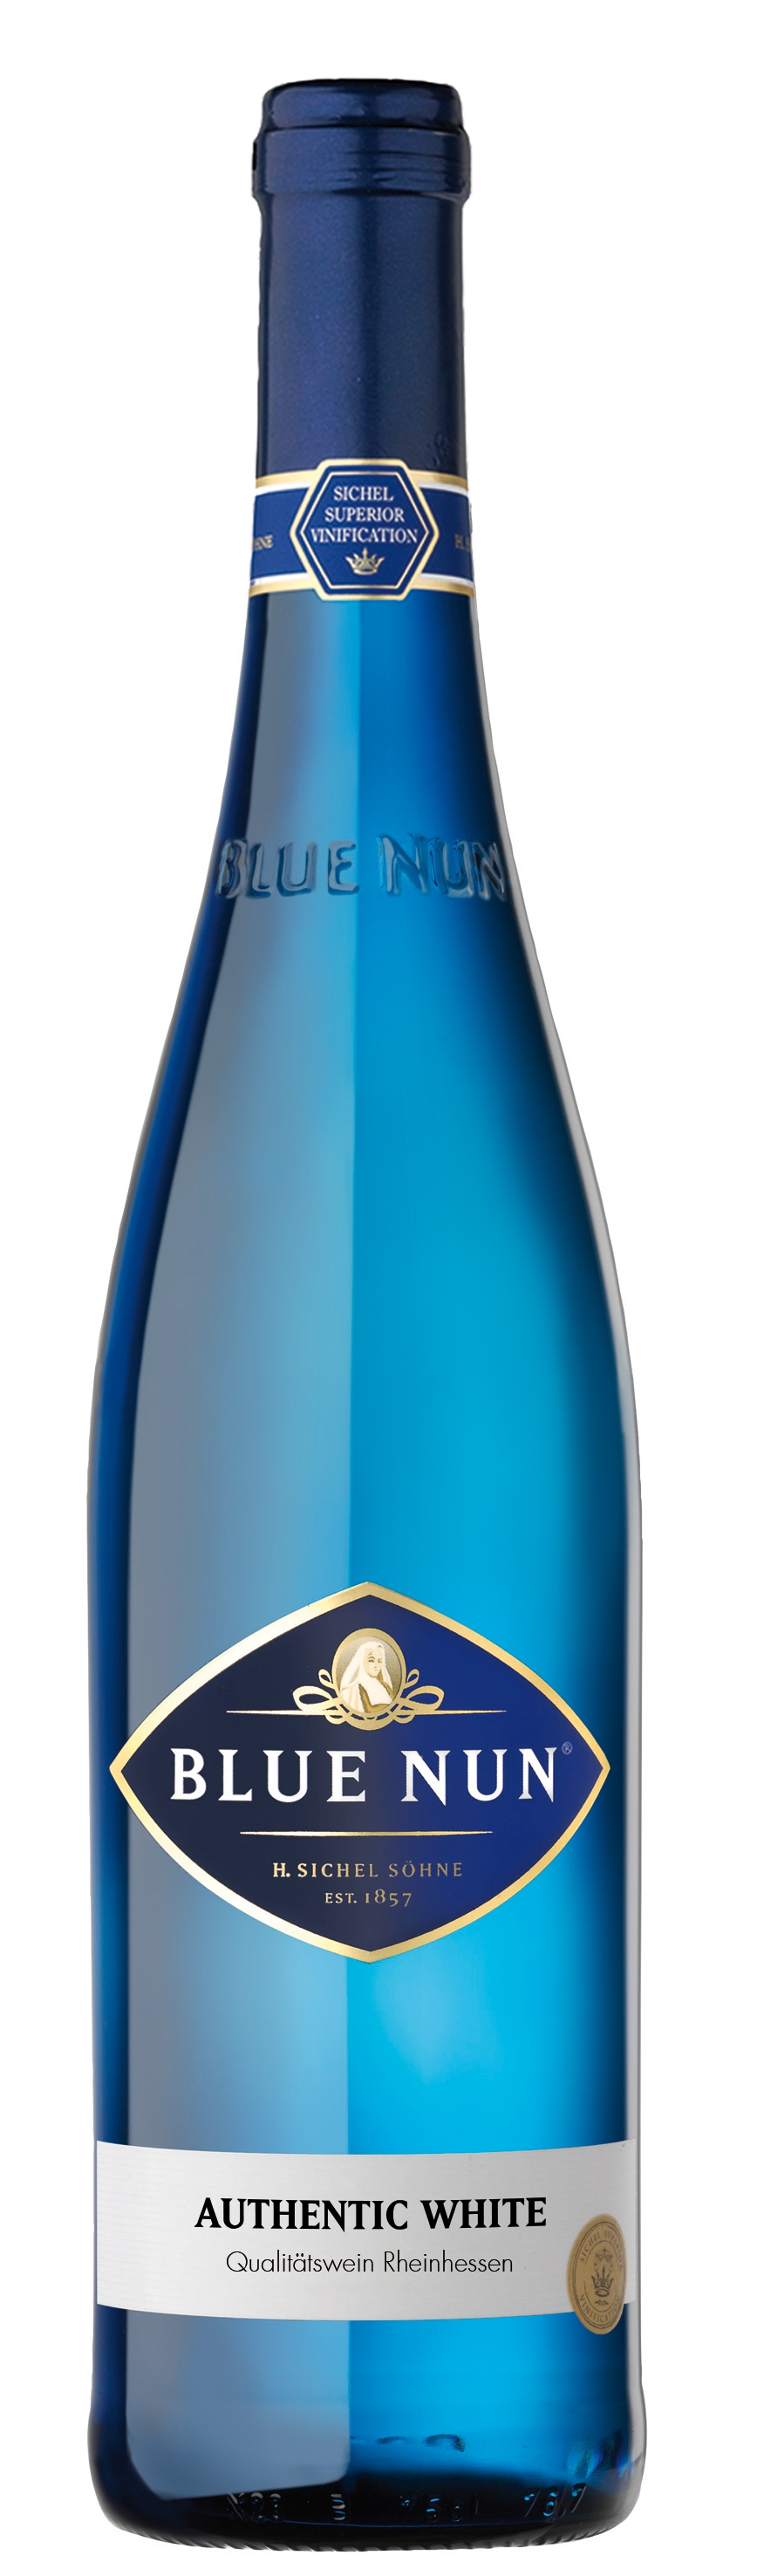 Blue Nun, QbA, Rheinhessen, lieblich, white wine  